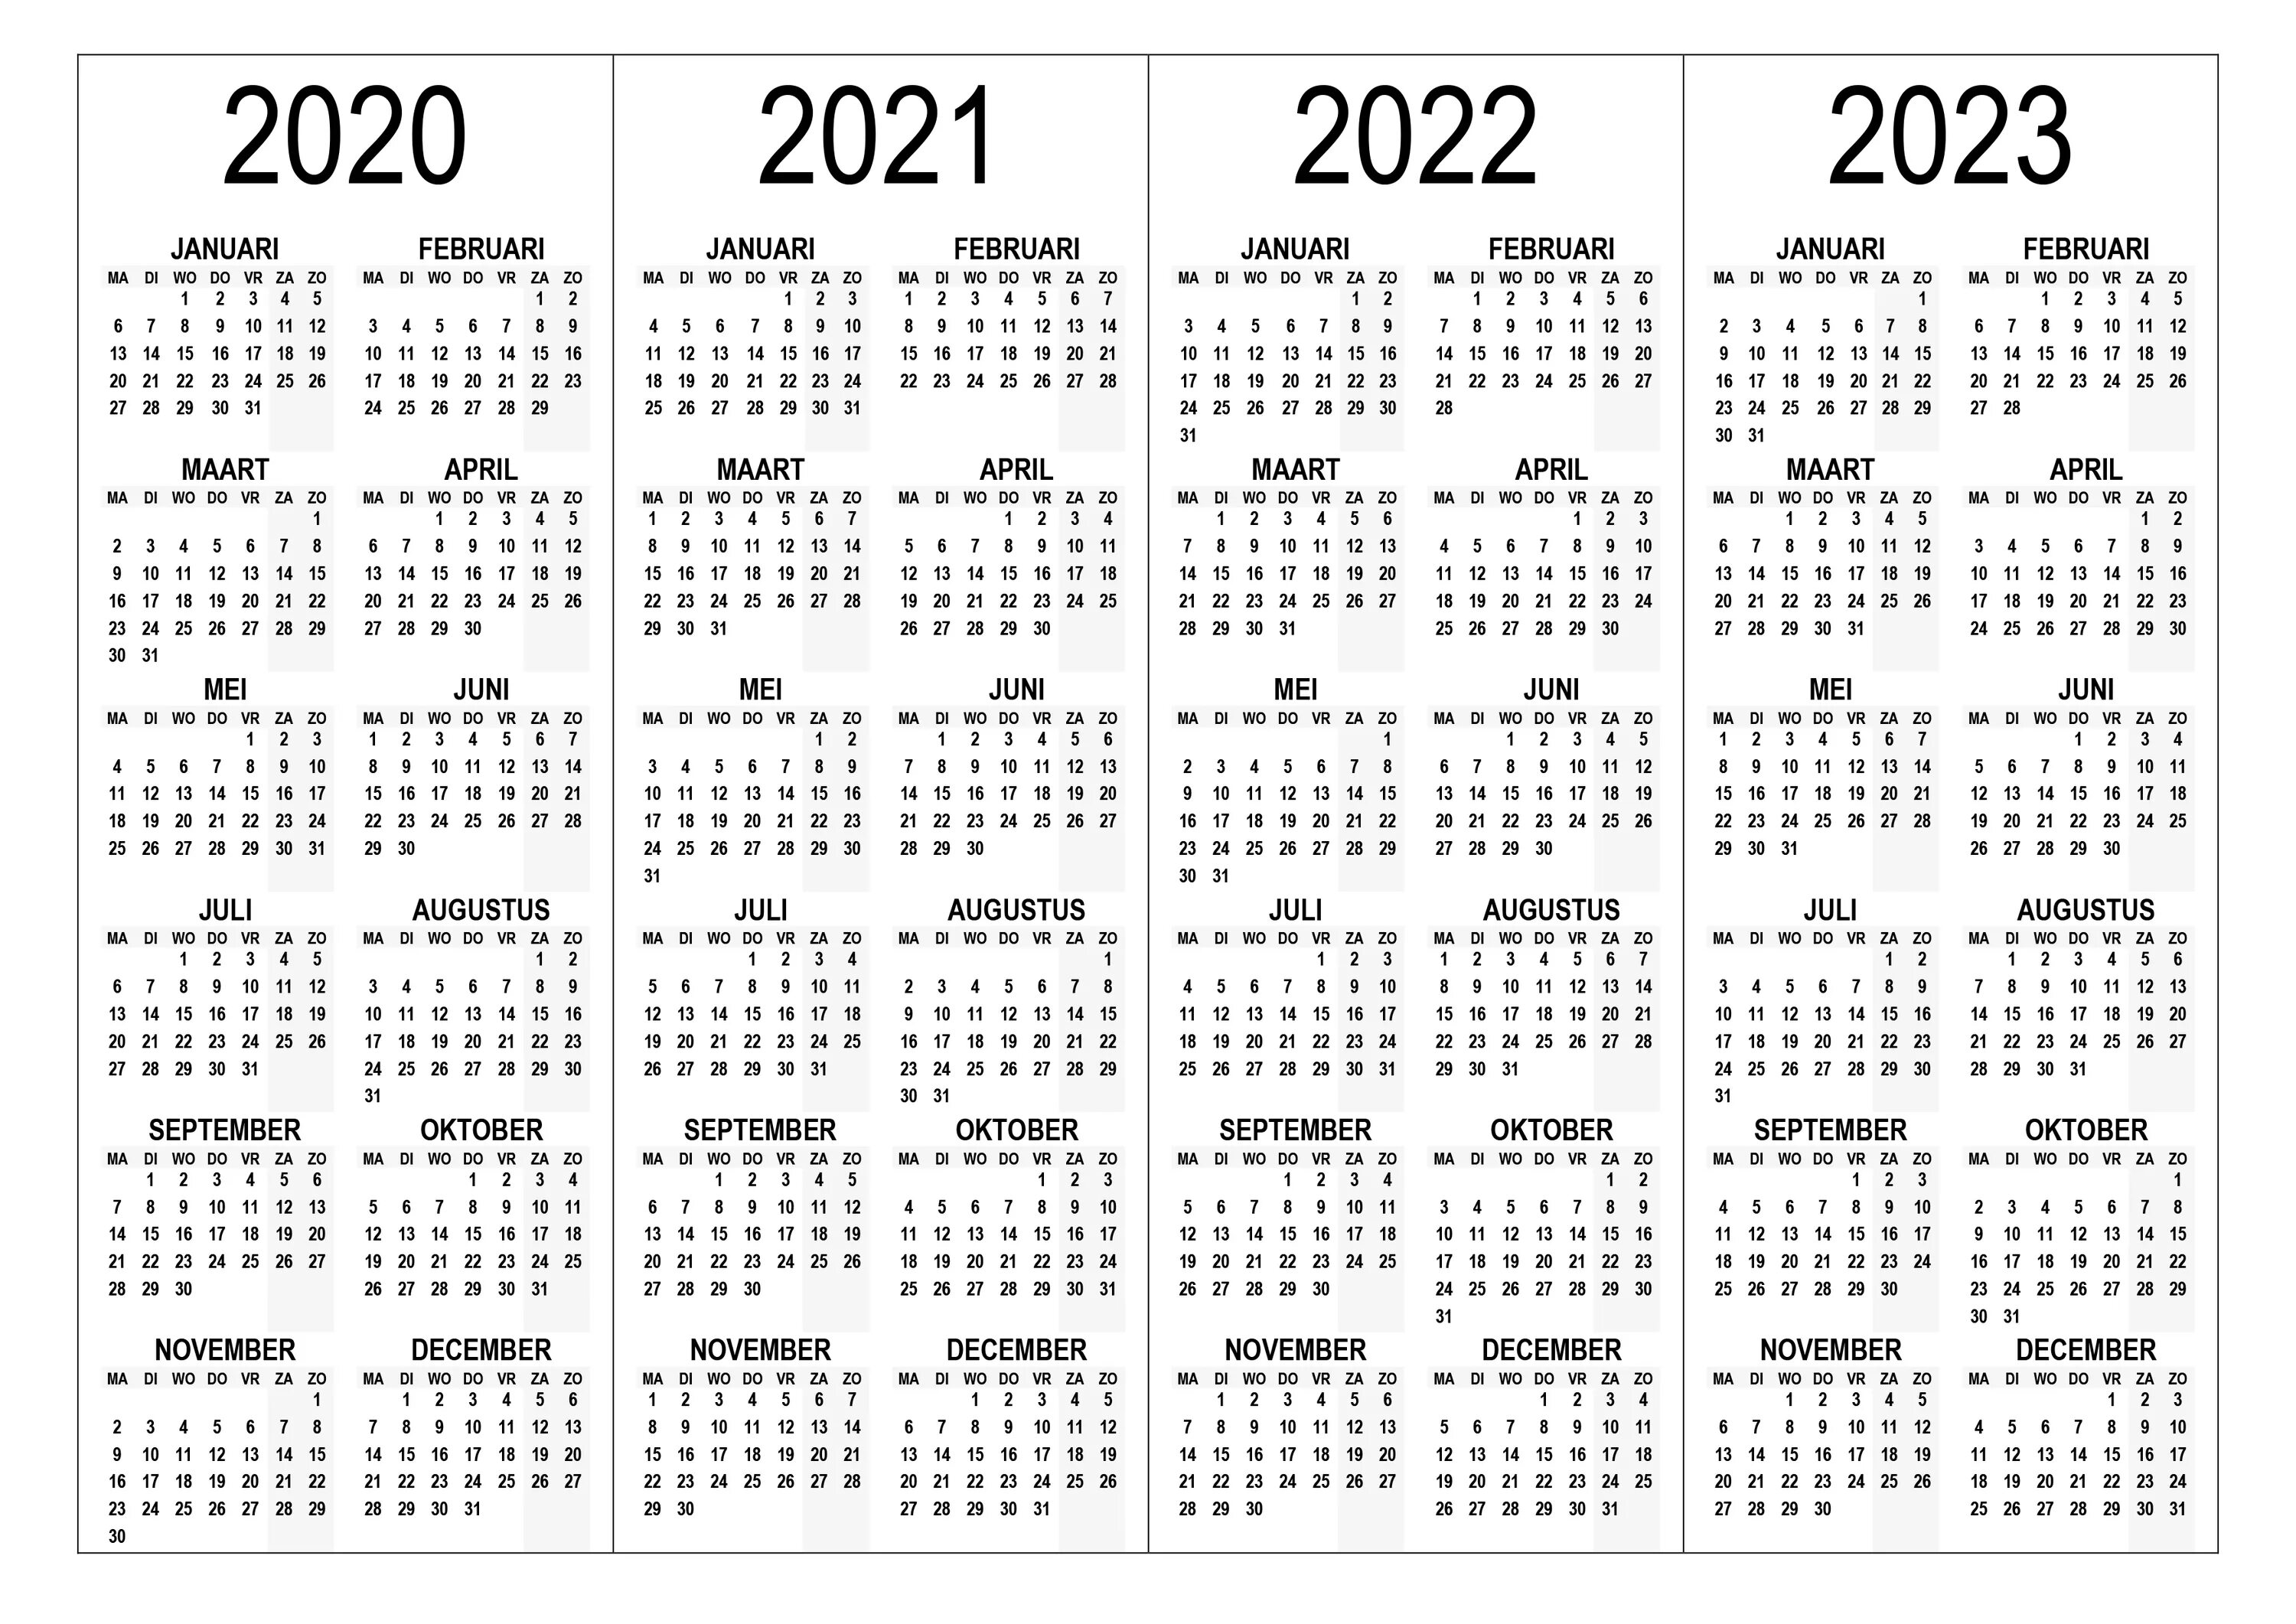 Календарь 2023 2024 2025. Календарь 2023 2024 2025 2026 года. Календарь 2025 на 2026 на 2027 года. Календарь 2021 2022 2023 2024 на одном листе.